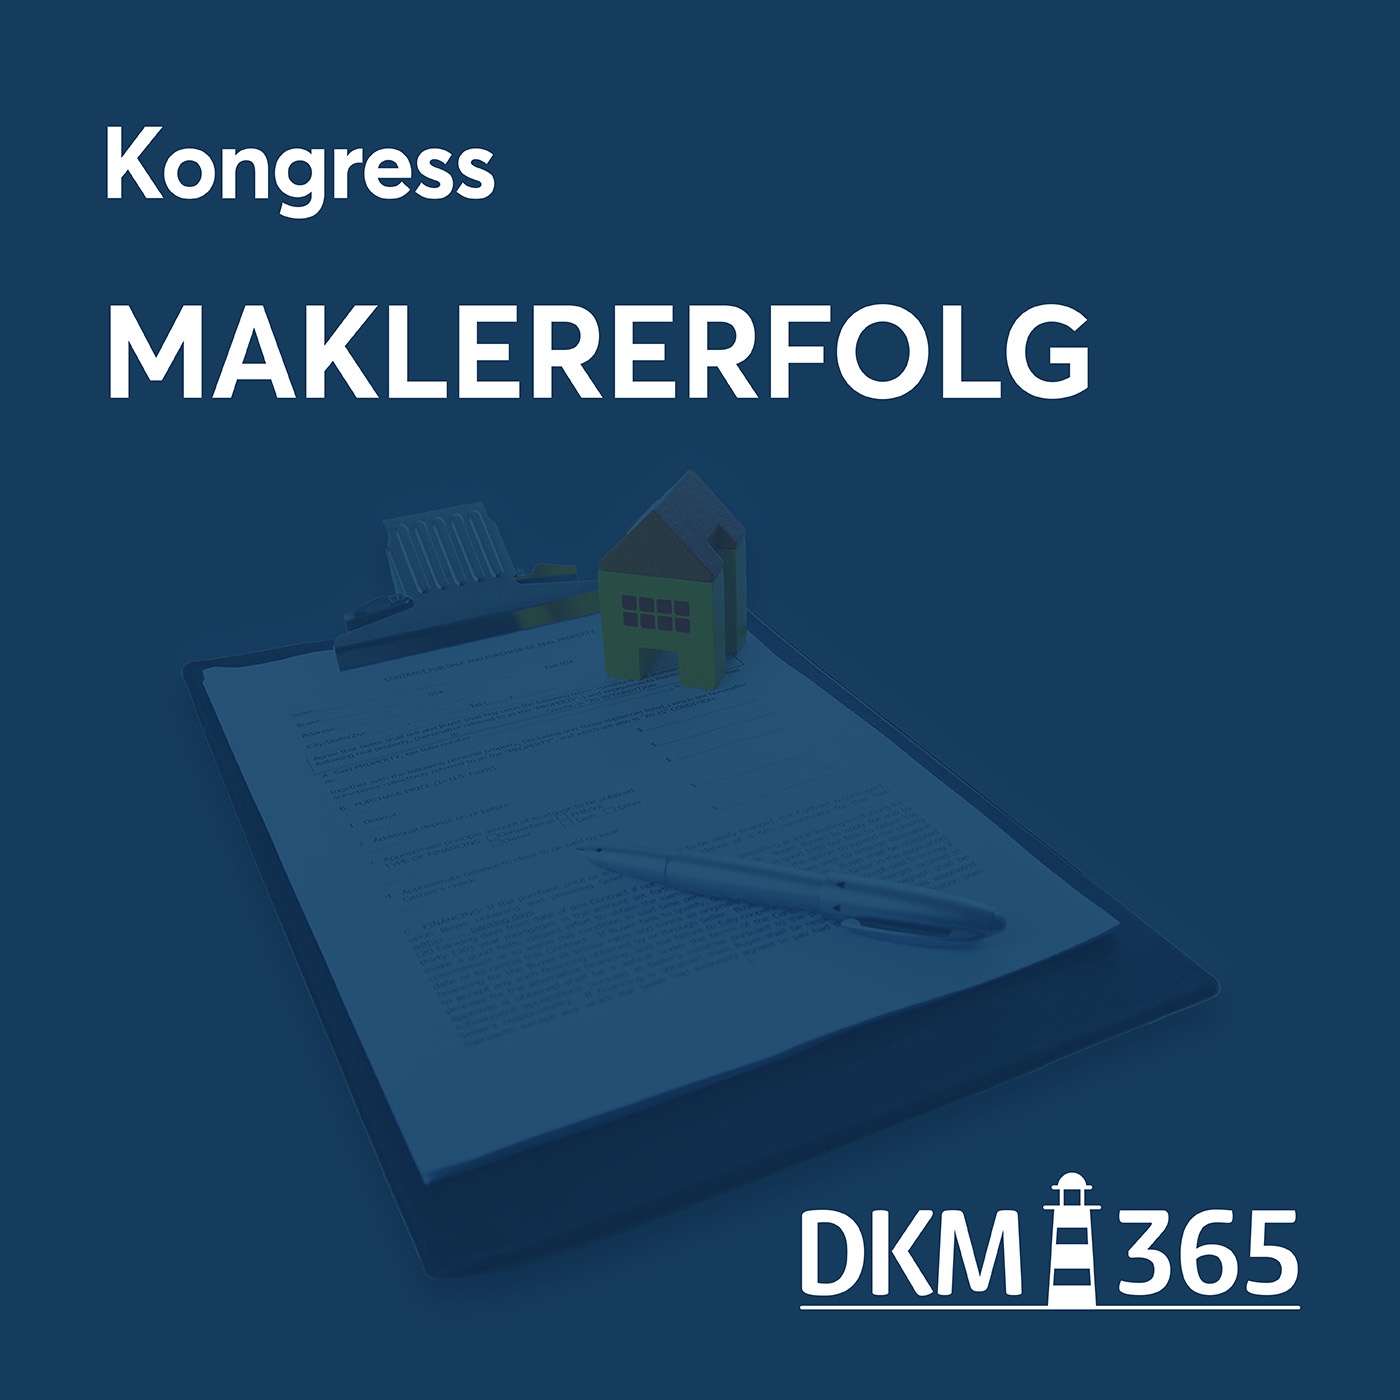 DKM OnStage - Kongress Maklererfolg mit Uwe P. Schwesig